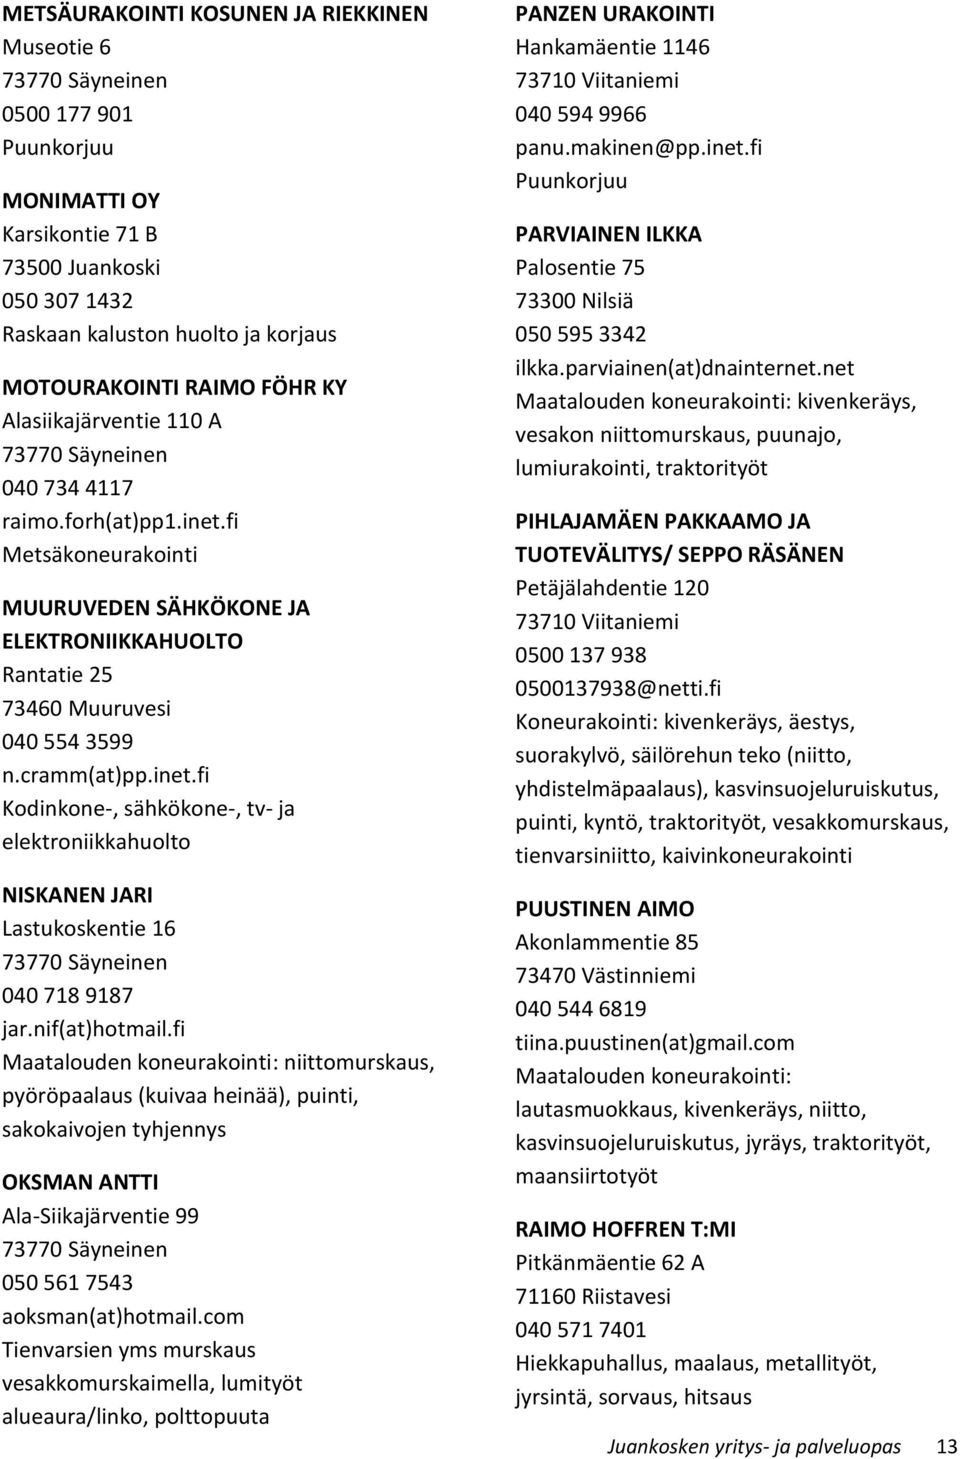 nif(at)hotmail.fi Maatalouden koneurakointi: niittomurskaus, pyöröpaalaus (kuivaa heinää), puinti, sakokaivojen tyhjennys OKSMAN ANTTI Ala-Siikajärventie 99 050 561 7543 aoksman(at)hotmail.